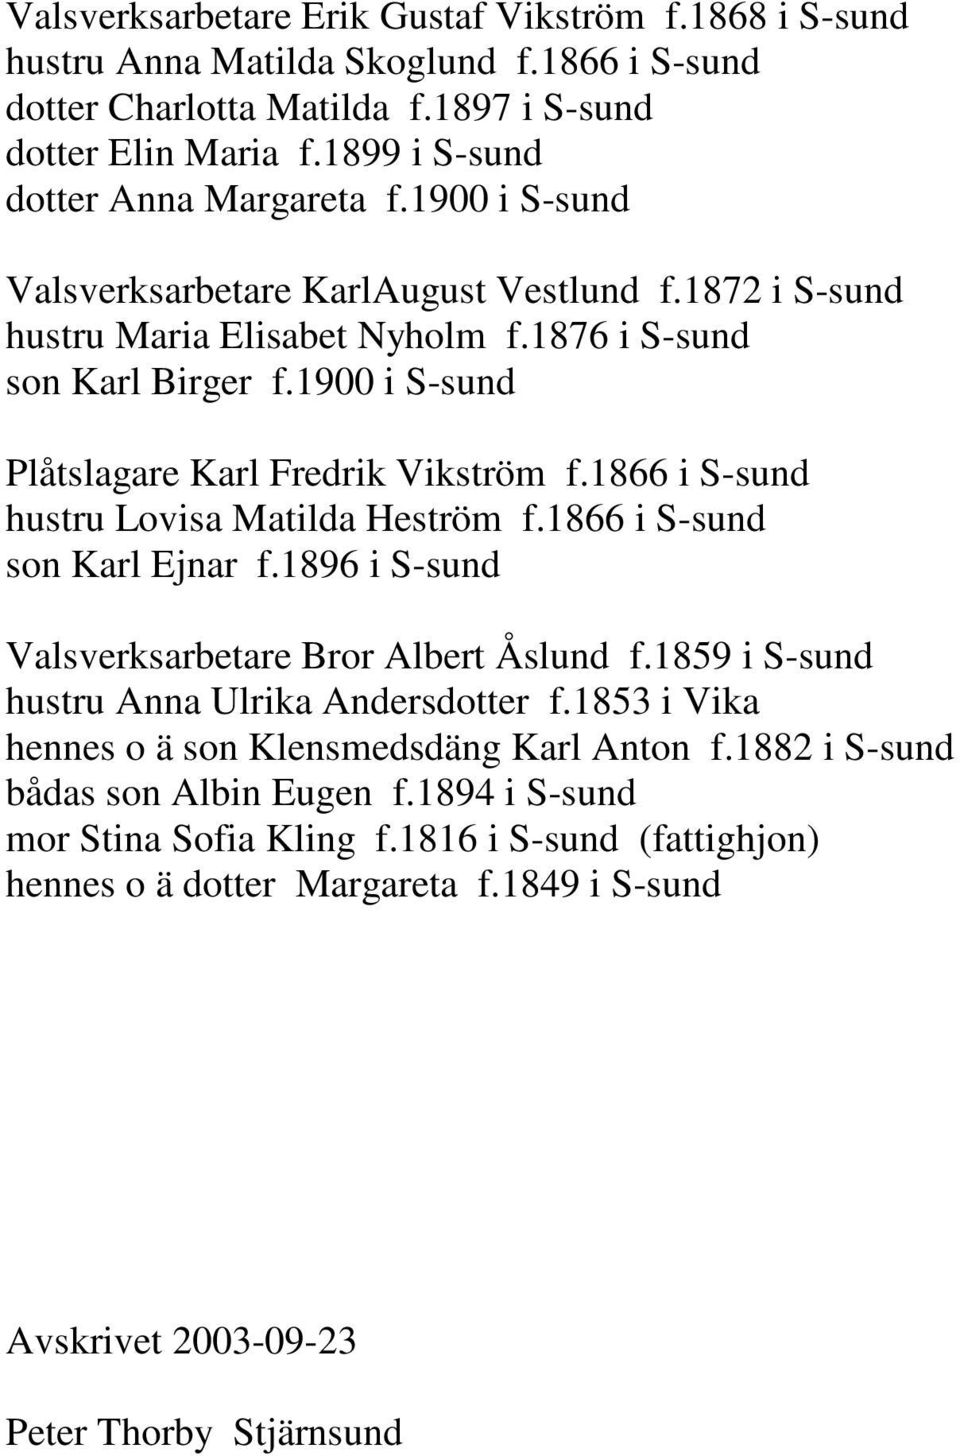 1866 i S-sund hustru Lovisa Matilda Heström f.1866 i S-sund son Karl Ejnar f.1896 i S-sund Valsverksarbetare Bror Albert Åslund f.1859 i S-sund hustru Anna Ulrika Andersdotter f.